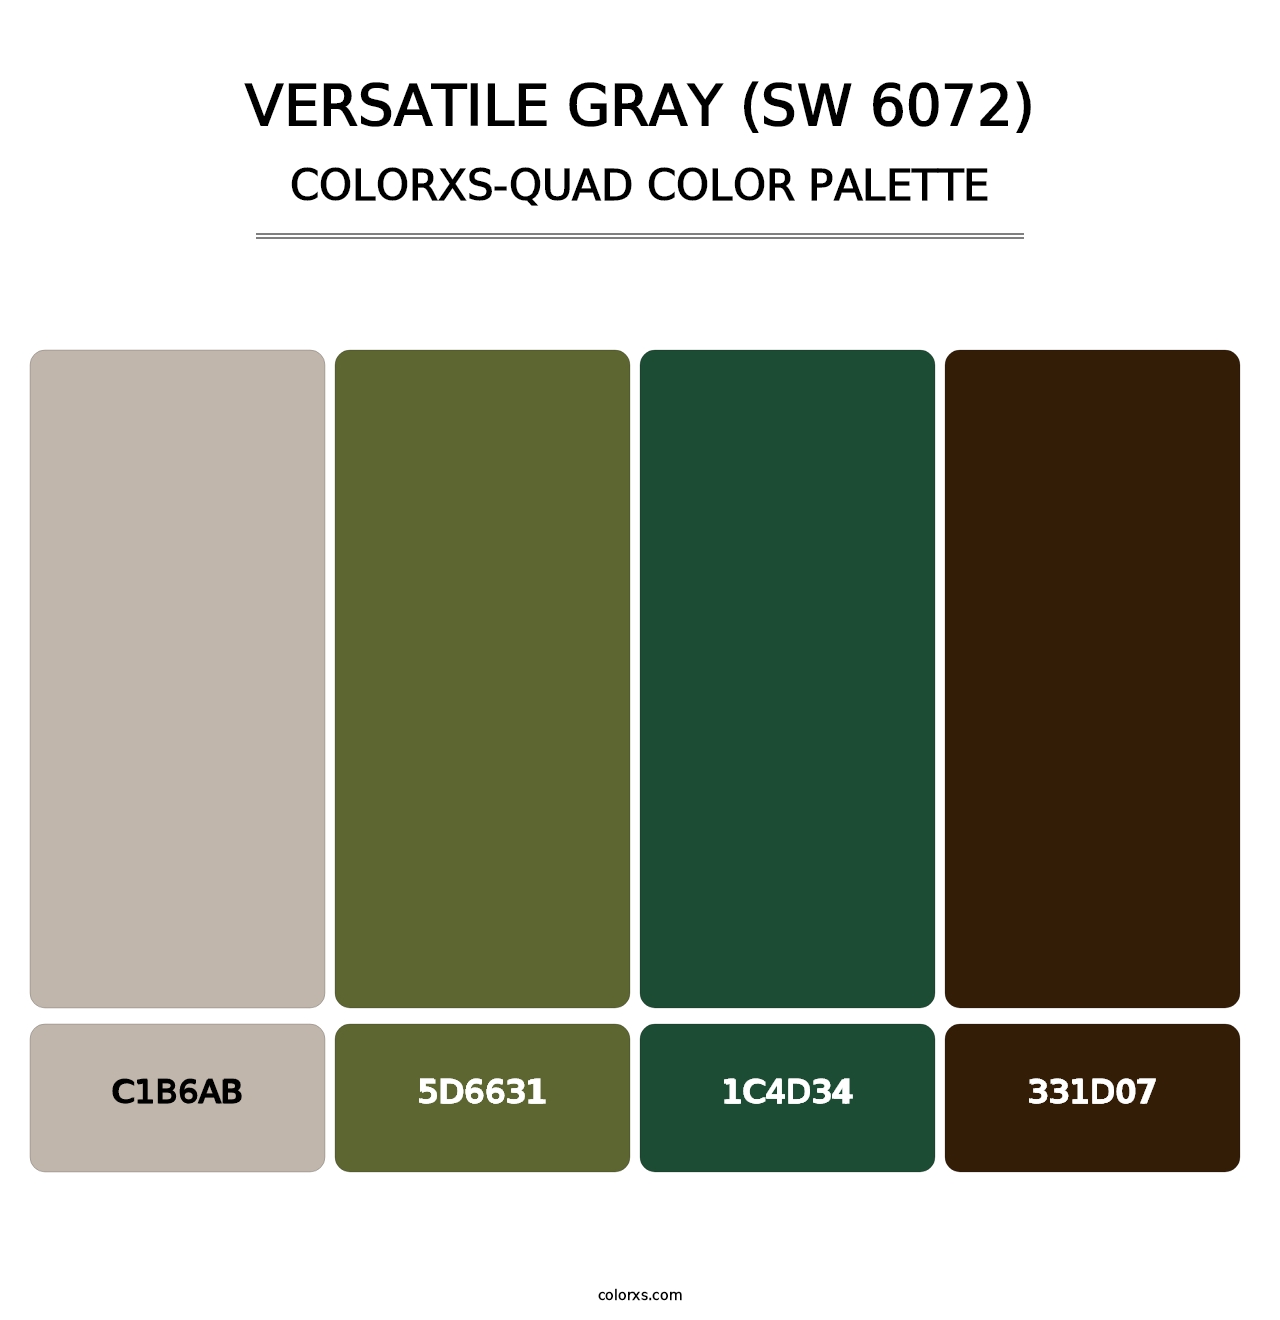 Versatile Gray (SW 6072) - Colorxs Quad Palette